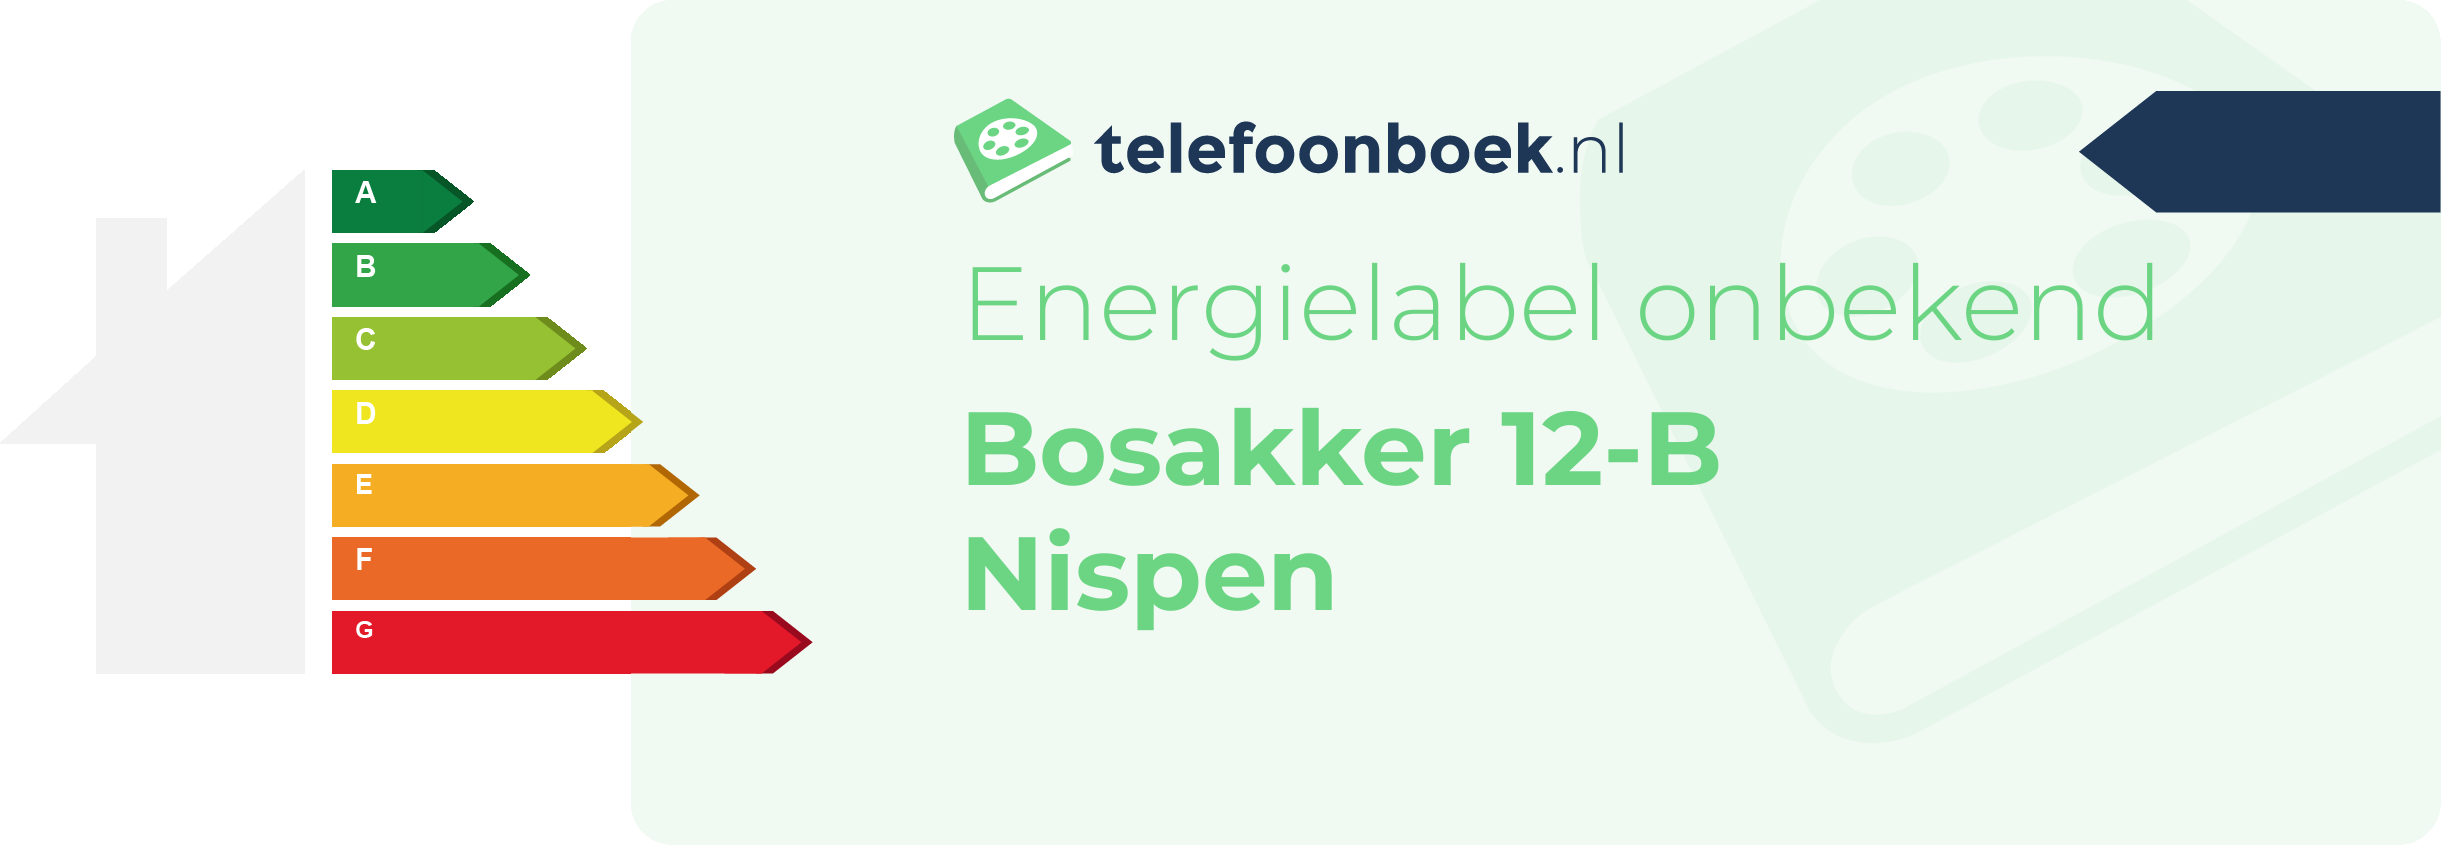 Energielabel Bosakker 12-B Nispen